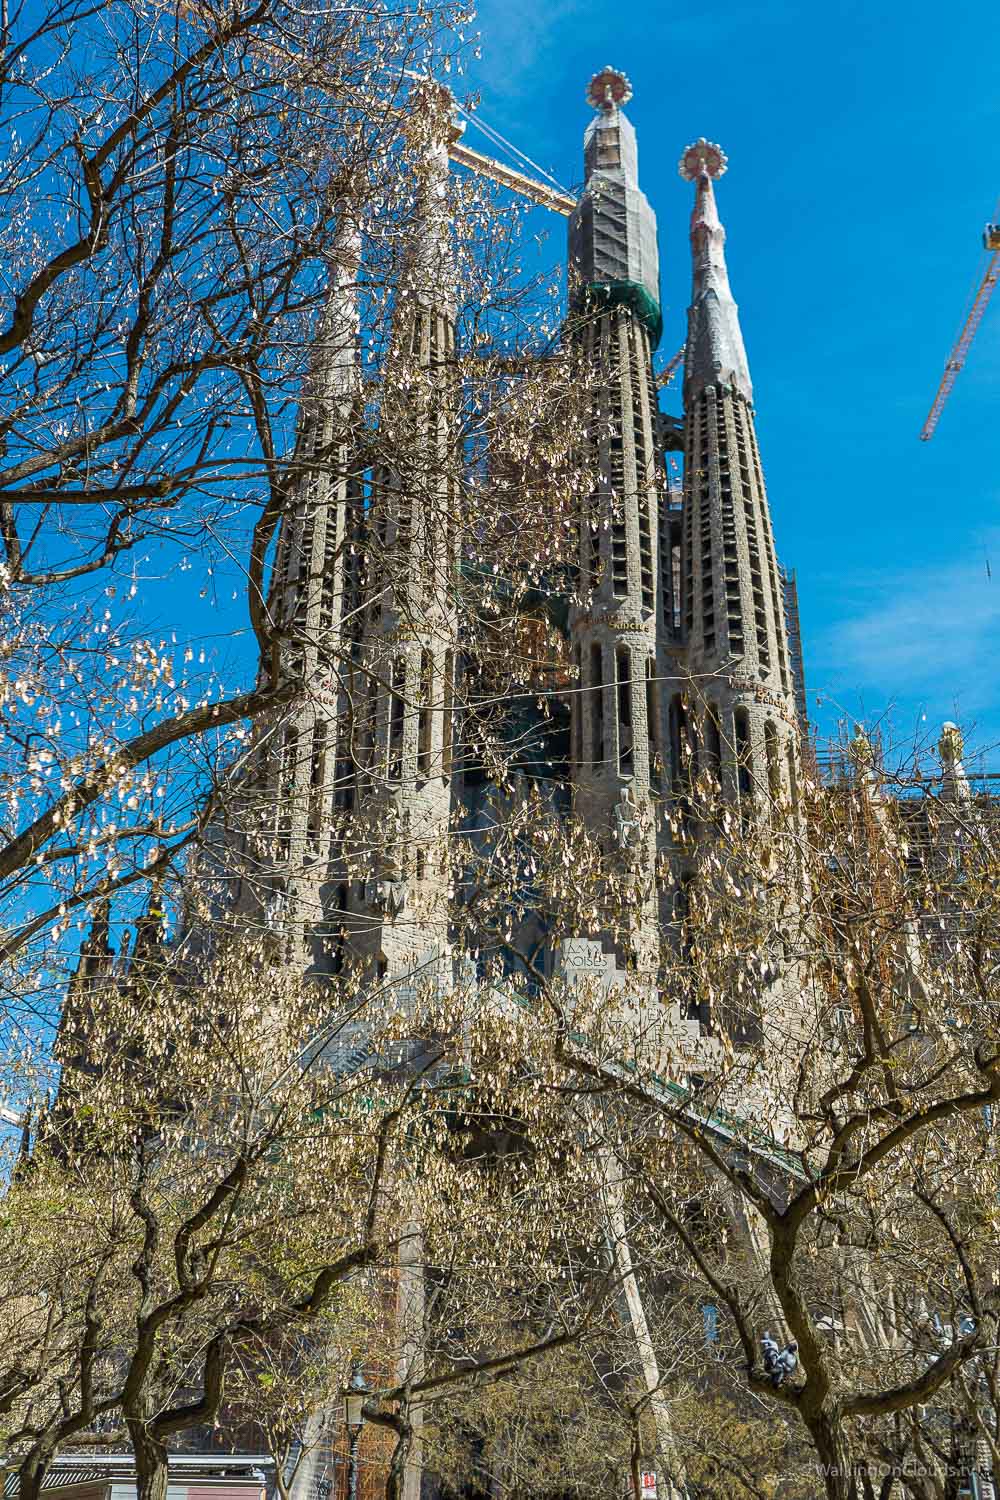 Kreuzfahrtblogger in Barcelona - Ausflüge im Angebot der TUI Cruises Mein Schiff5 - Erlebnis als Best-Ager-Reiseblogger in Spanien - Sagrada Familia - Park Gaudi , Aussicht Barcelona - Sehenswürdigkeiten Barcelona